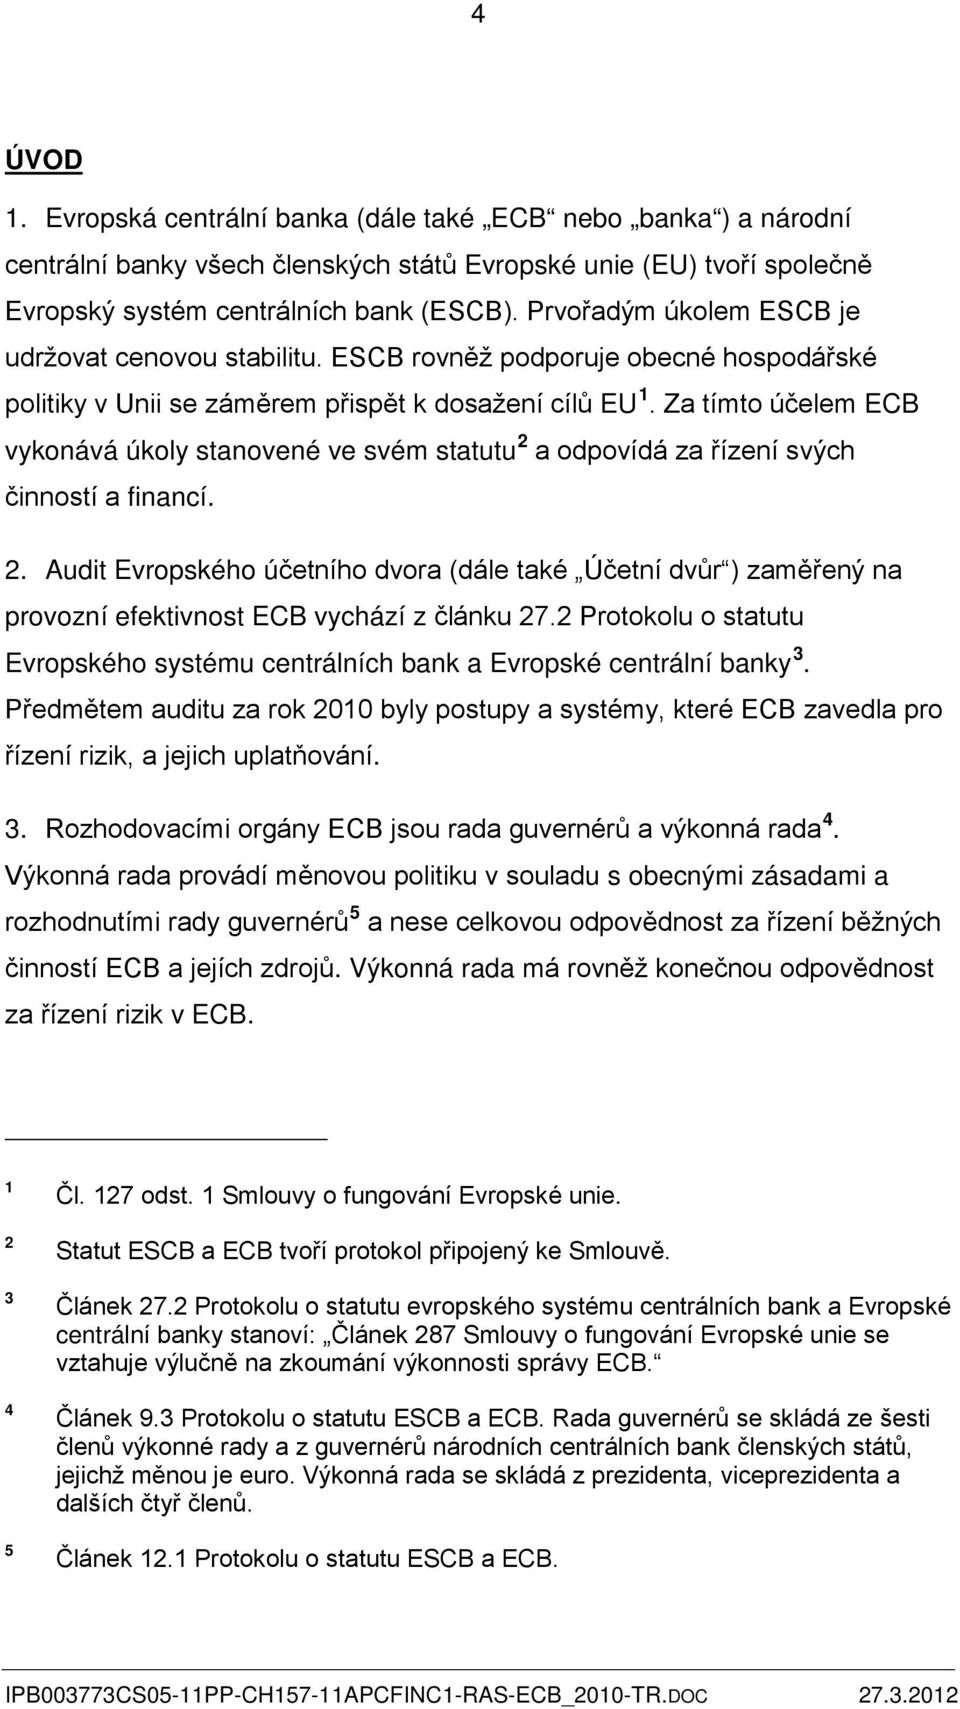 Za tímto účelem ECB vykonává úkoly stanovené ve svém statutu 2 a odpovídá za řízení svých činností a financí. 2. Audit Evropského účetního dvora (dále také Účetní dvůr ) zaměřený na provozní efektivnost ECB vychází z článku 27.